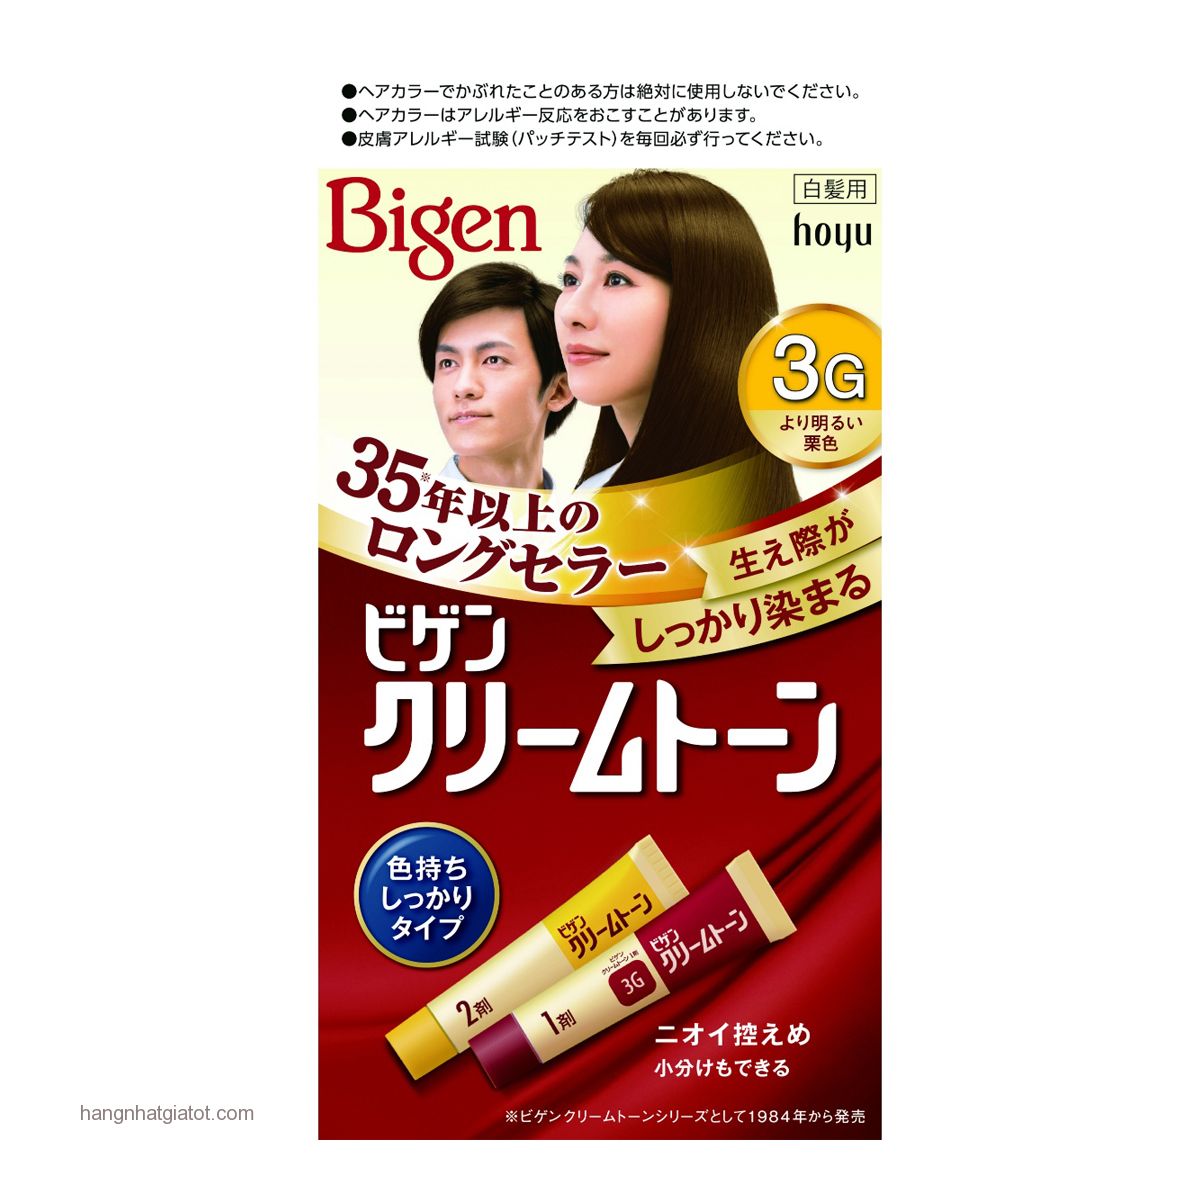 Có cần pha trộn thêm thuốc oxy khi sử dụng thuốc nhuộm tóc Bigen 3g không?
